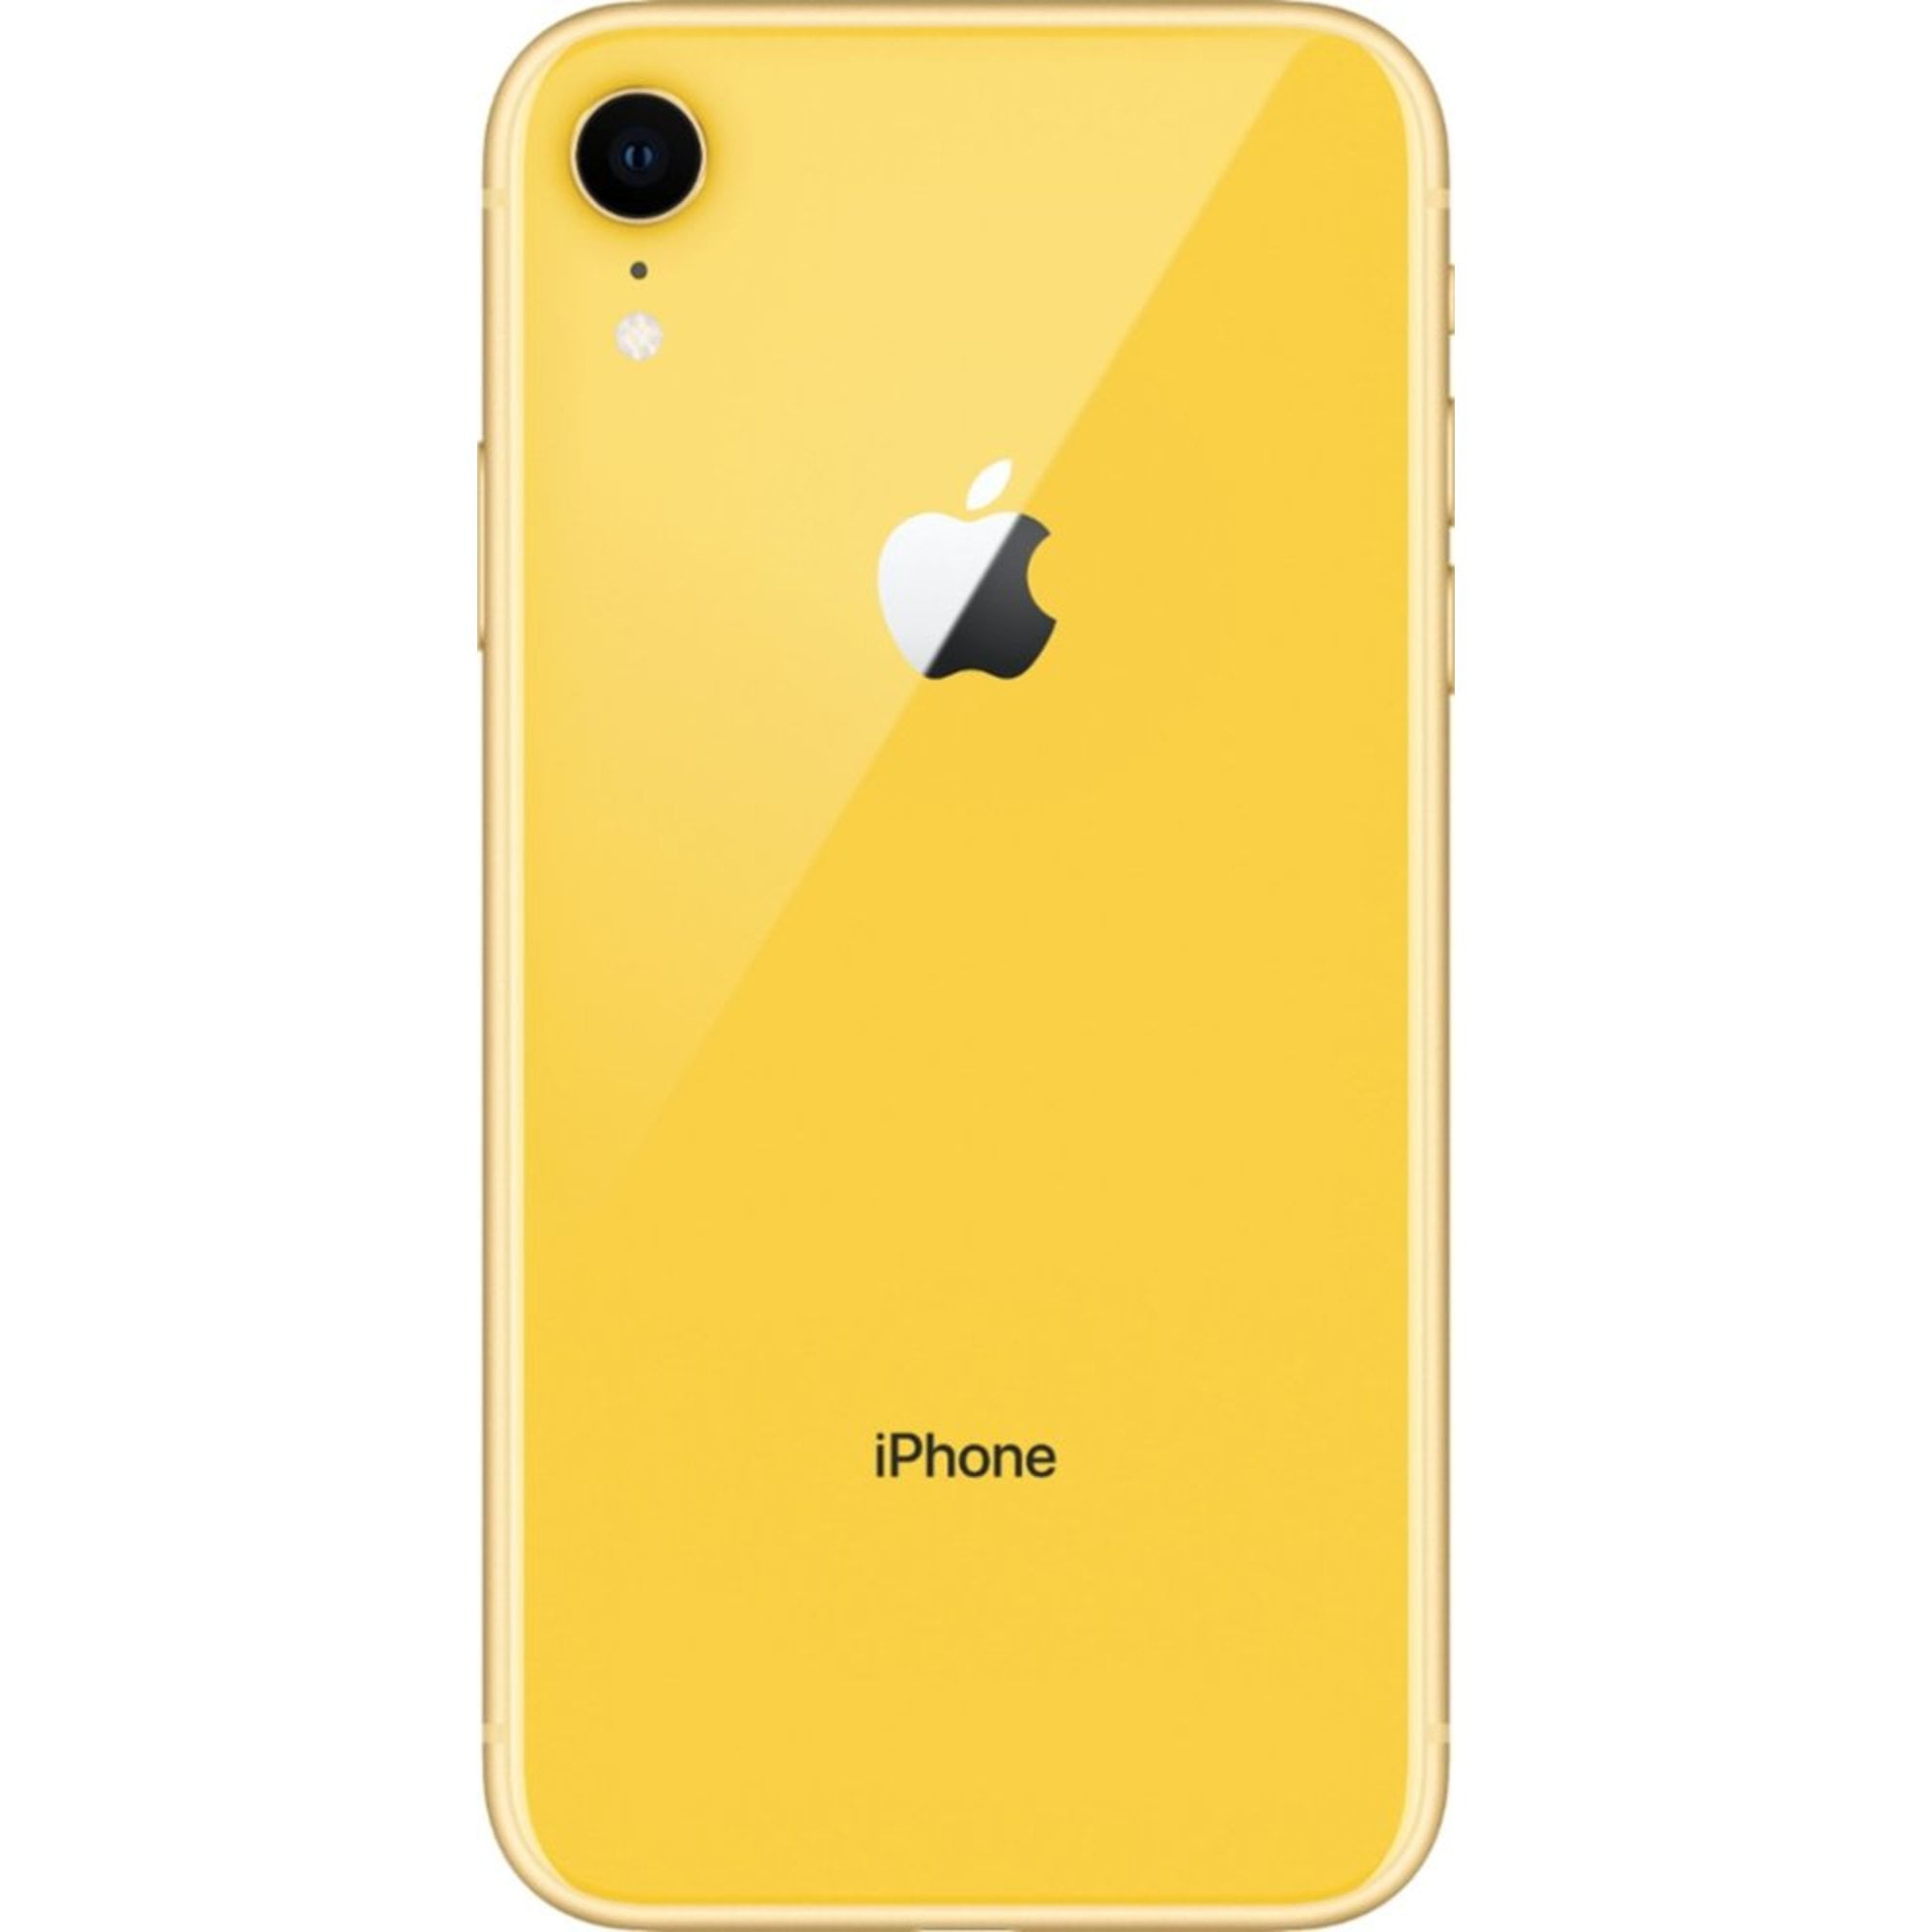 Comprar iPhone XR 64 GB - Coral - Grado C - Móviles Seminuevos KM0